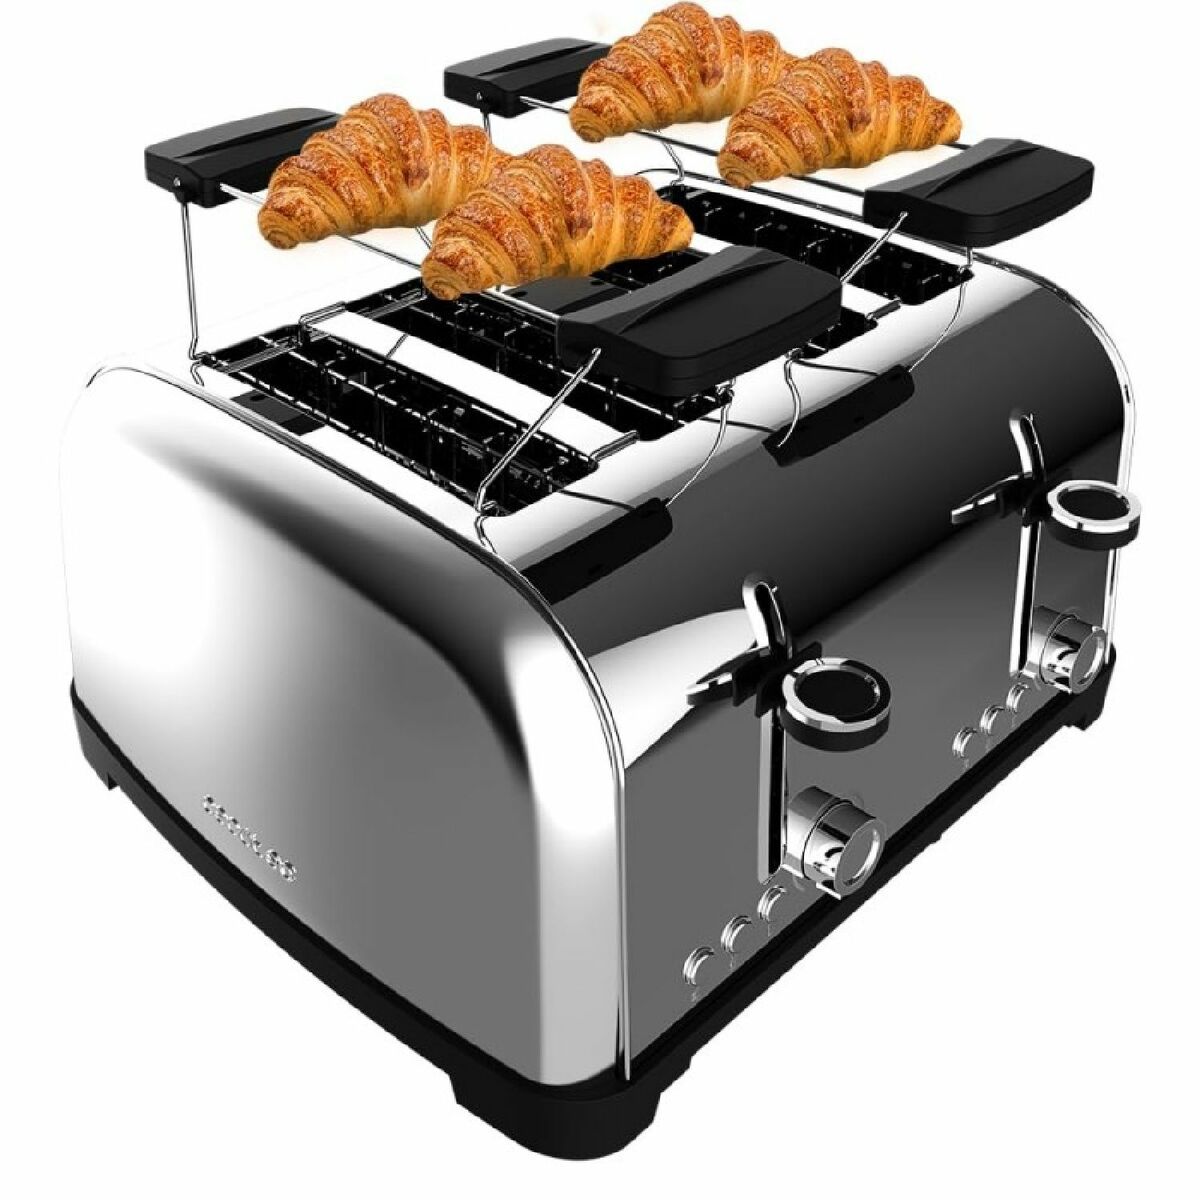 Toaster Cecotec Toastin' time 1700 Double Inox 1700 W